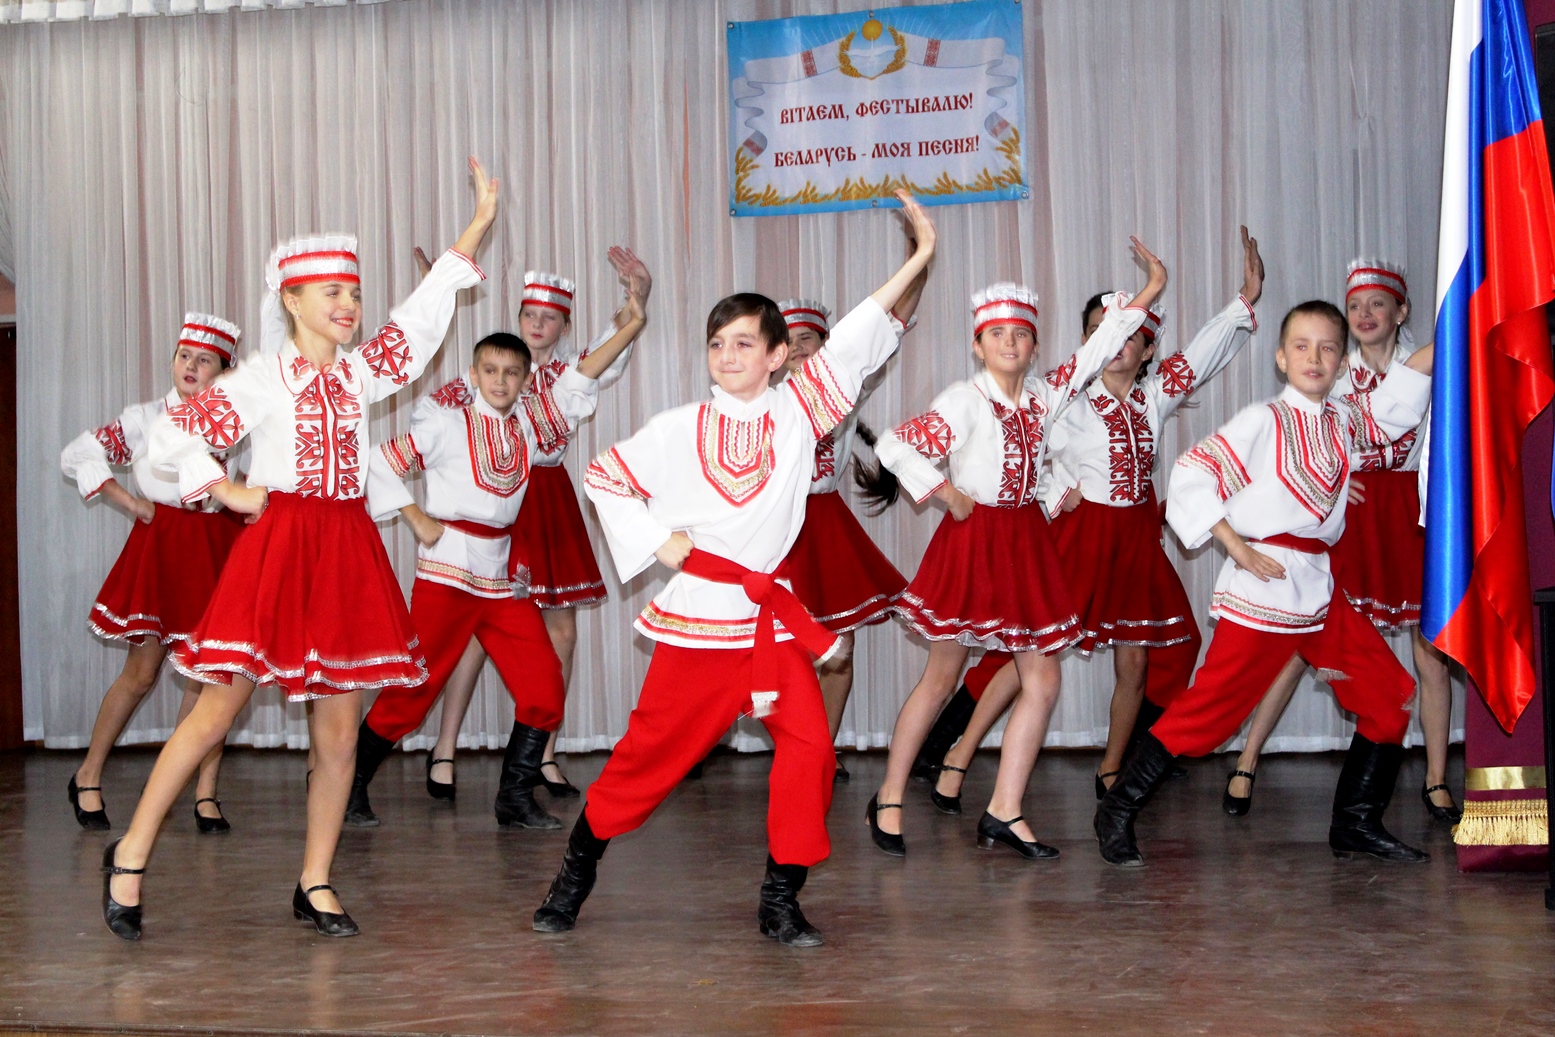 Гала-концерт лауреатов фестиваля «Беларусь – моя песня!» пройдет в рамках белорусского праздника «Дажынкi»